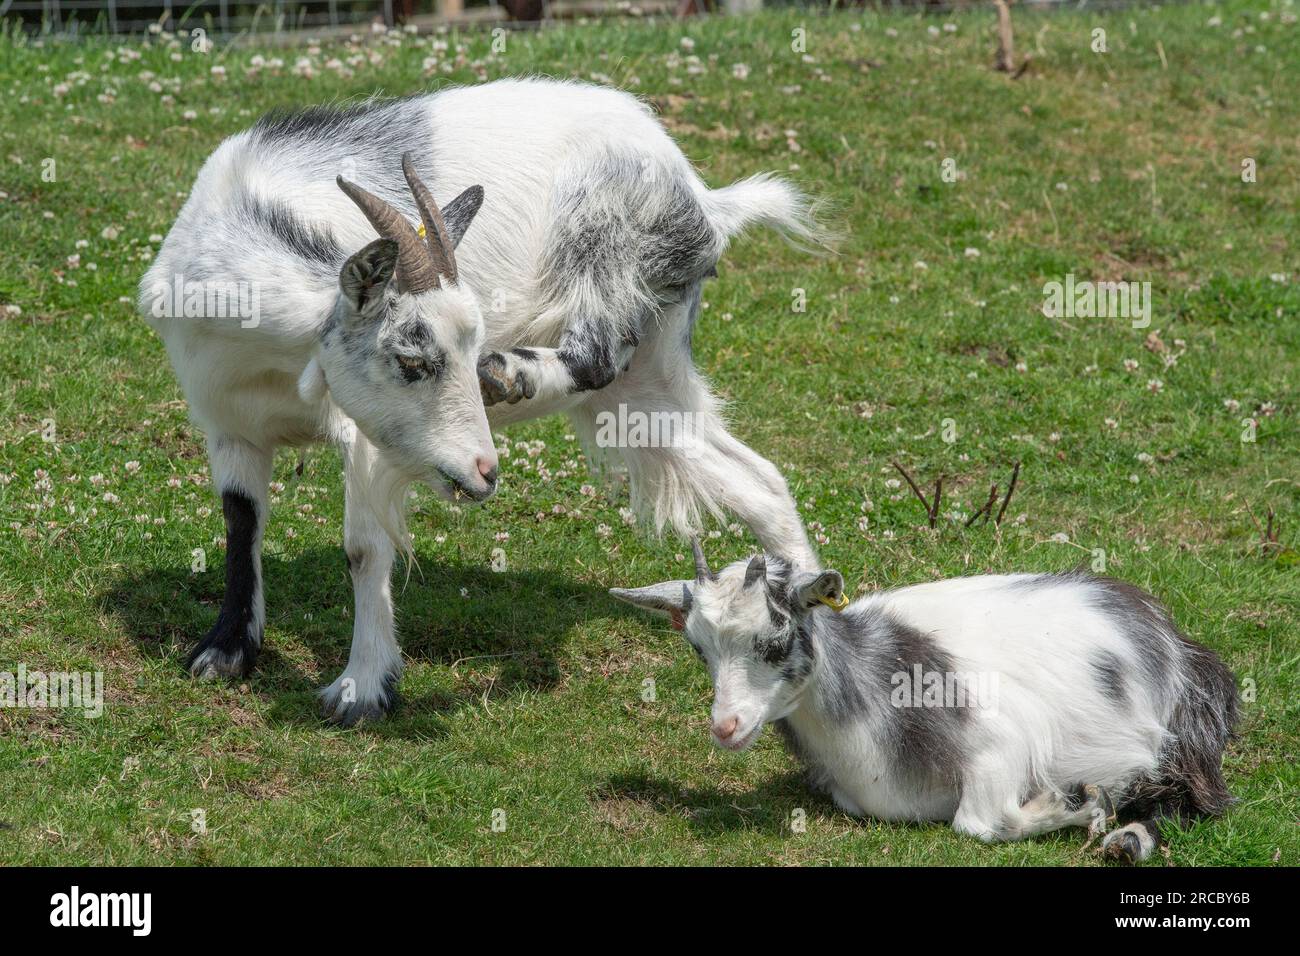 Mère chèvre pygmée avec son bébé chèvre enfant Banque D'Images